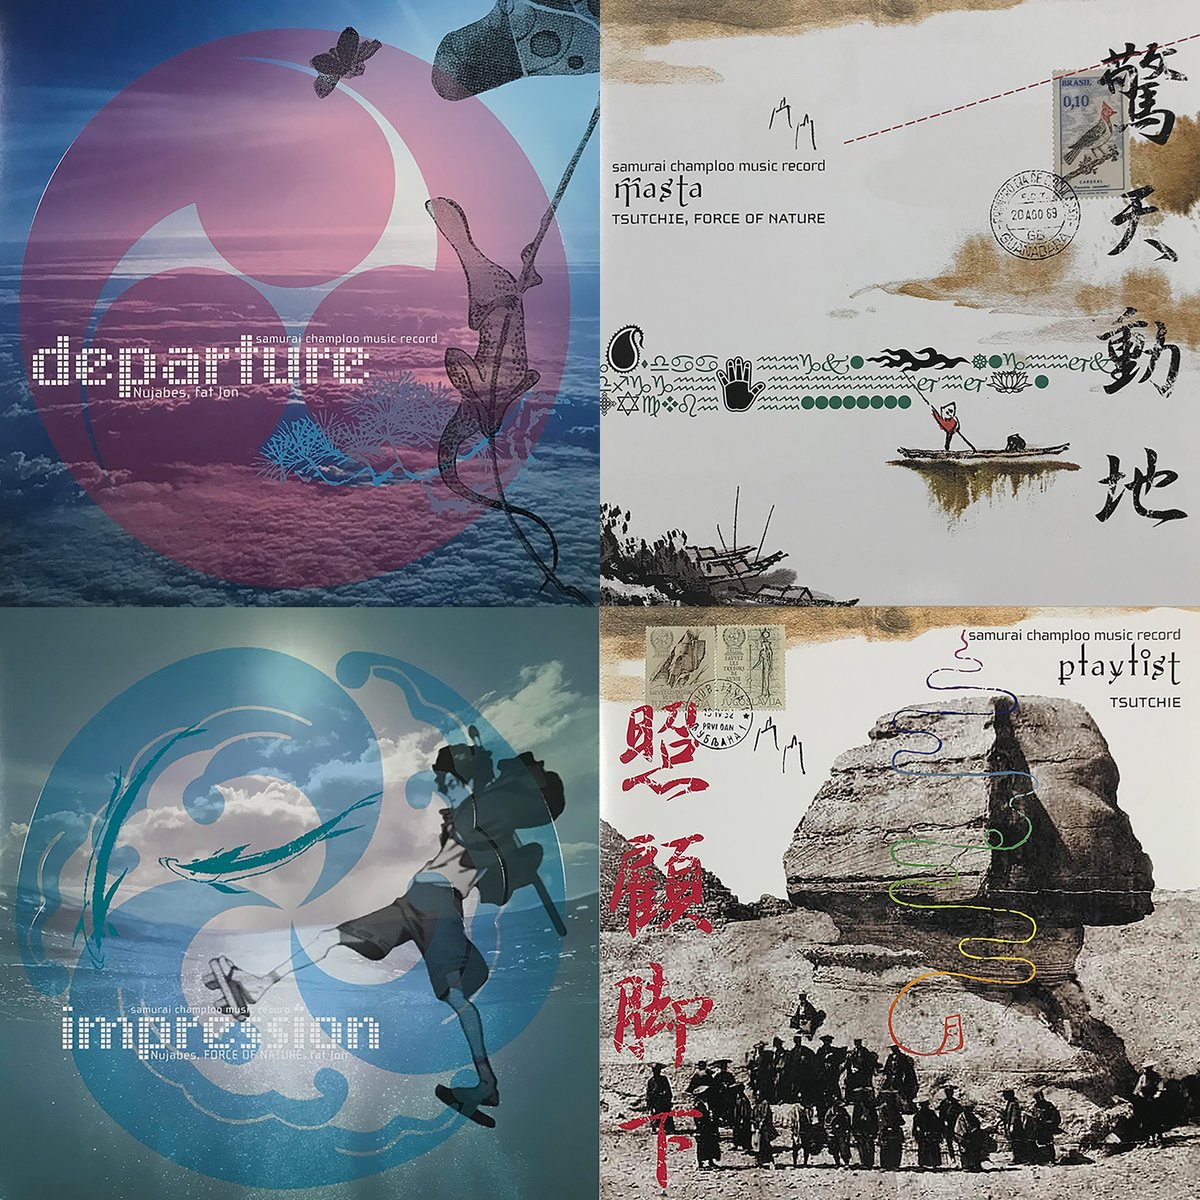 【#サムライチャンプルー】
#samuraichamploo music record
CD 4タイトル
6️⃣月2️⃣6️⃣日
紙ジャケットでリイシュー決定🎉

#departure 
#masta
#impression 
#playlist

#Nujabes
#fatjon
#FORCEOFNATURE
#Tsutchie
#Sing02
#MINMI